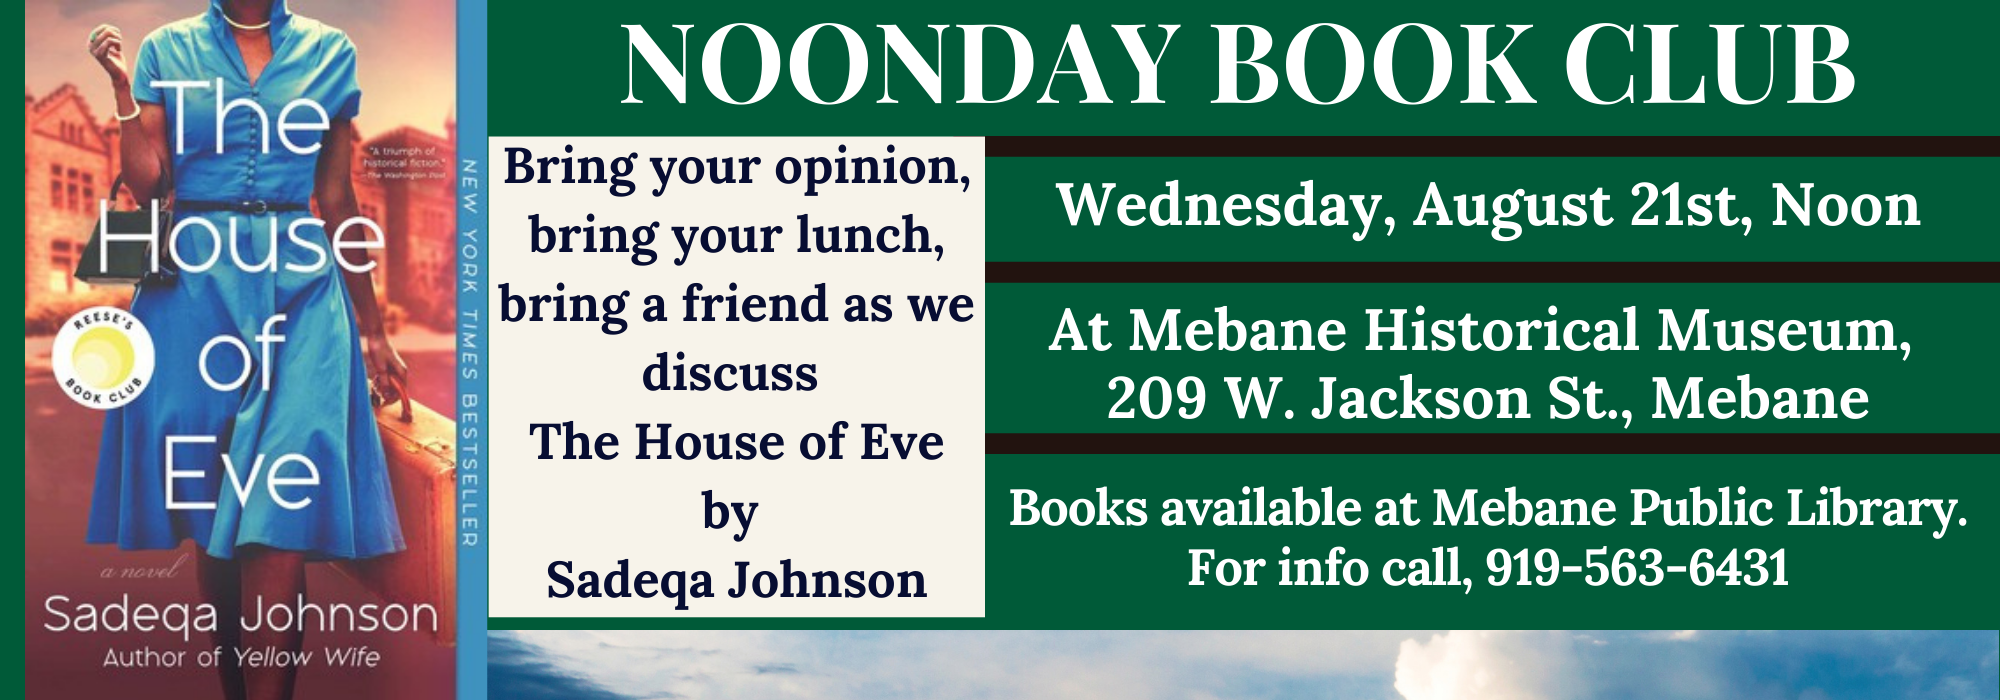 8.21 at Noon - Noonday Book Club at Mebane